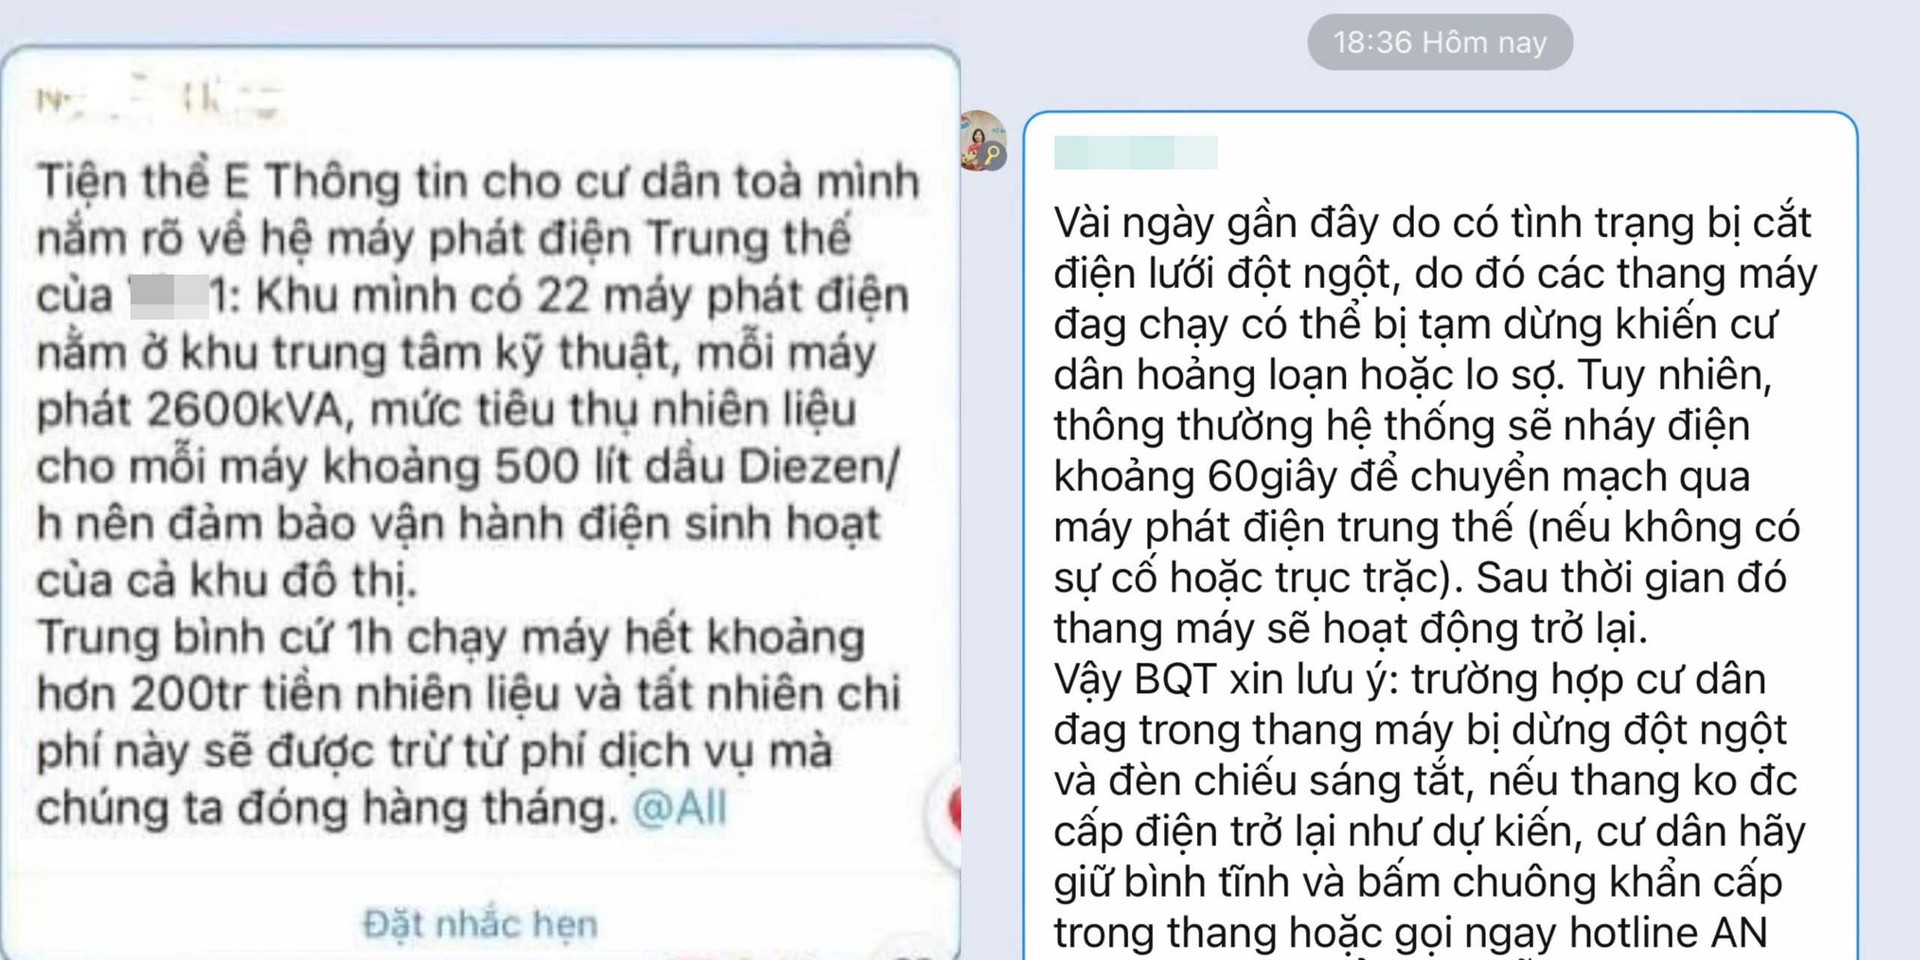 Khu chung cư nhà giàu ở Hà Nội chi 200 triệu đồng/giờ chạy máy phát điện - 3